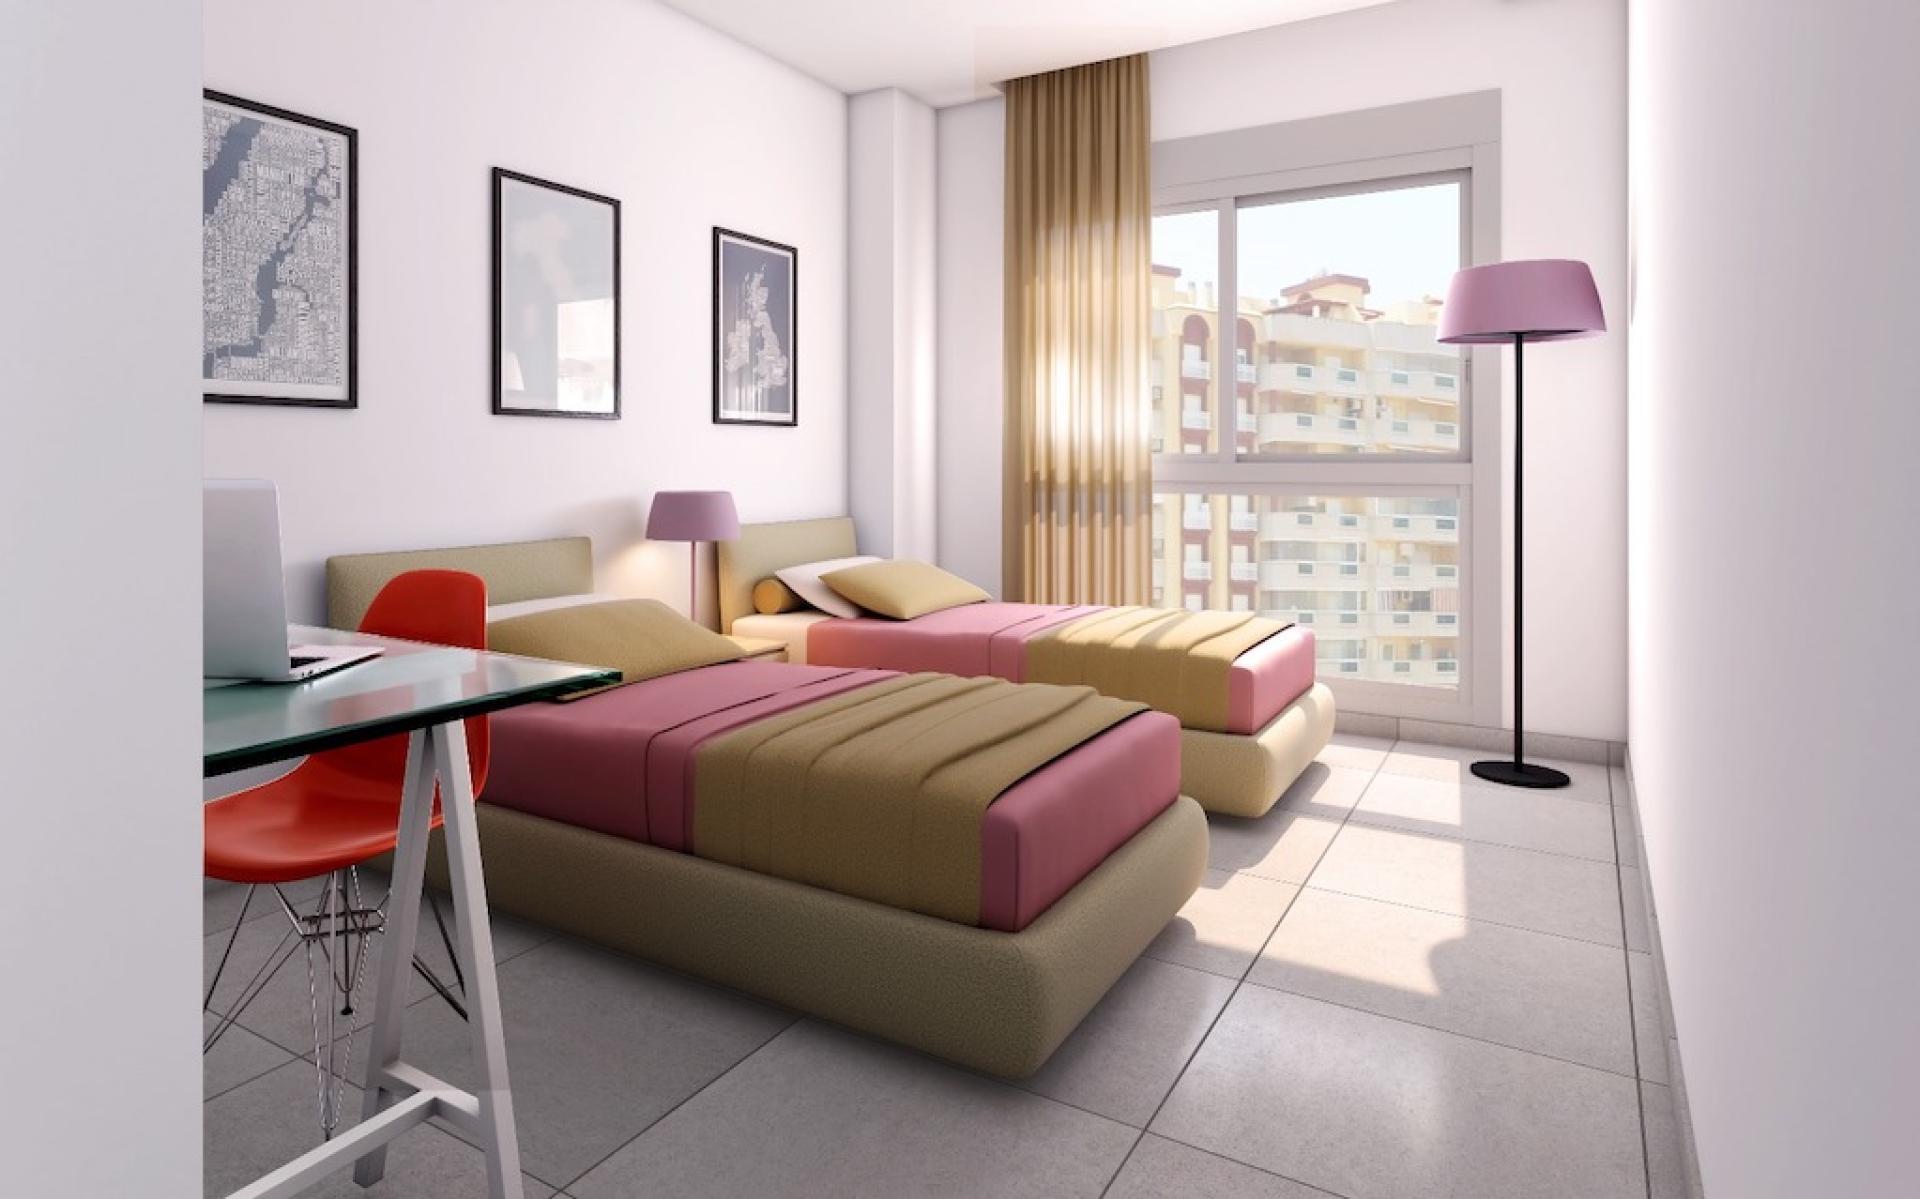 3 slaapkamer Appartement met terras in La Manga - Nieuwbouw in Medvilla Spanje